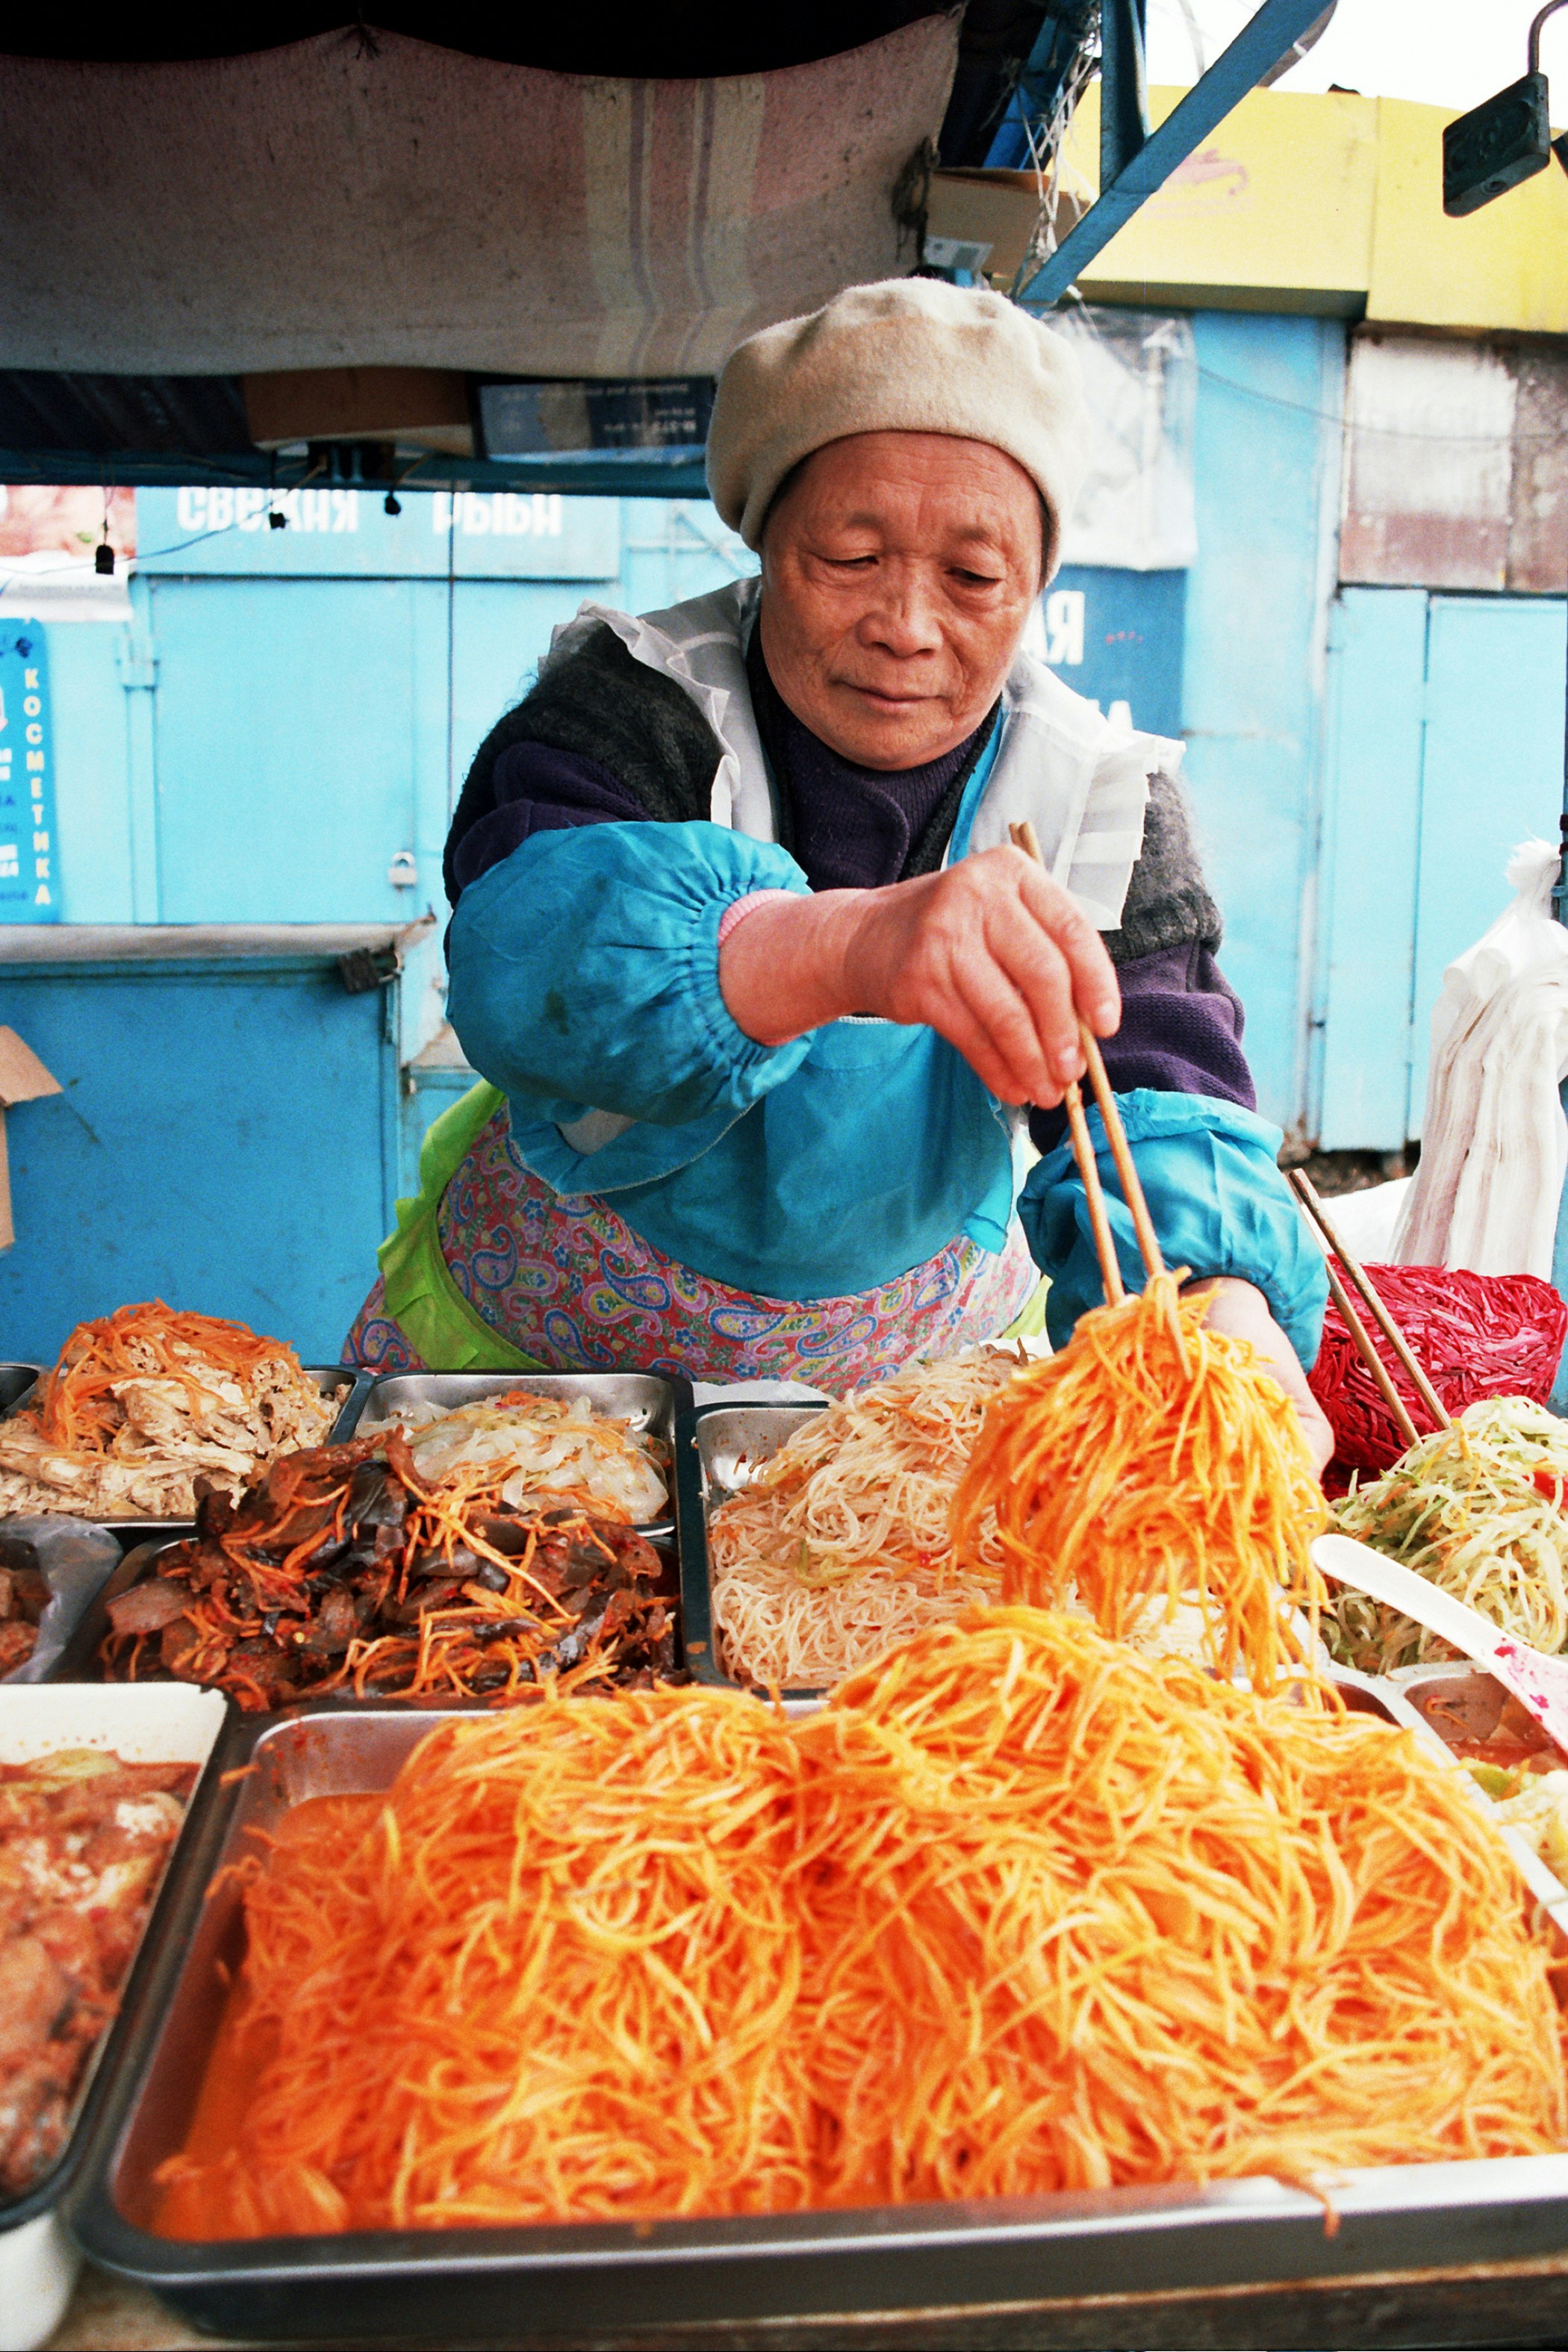 An elderly woman serving food with chopsticks